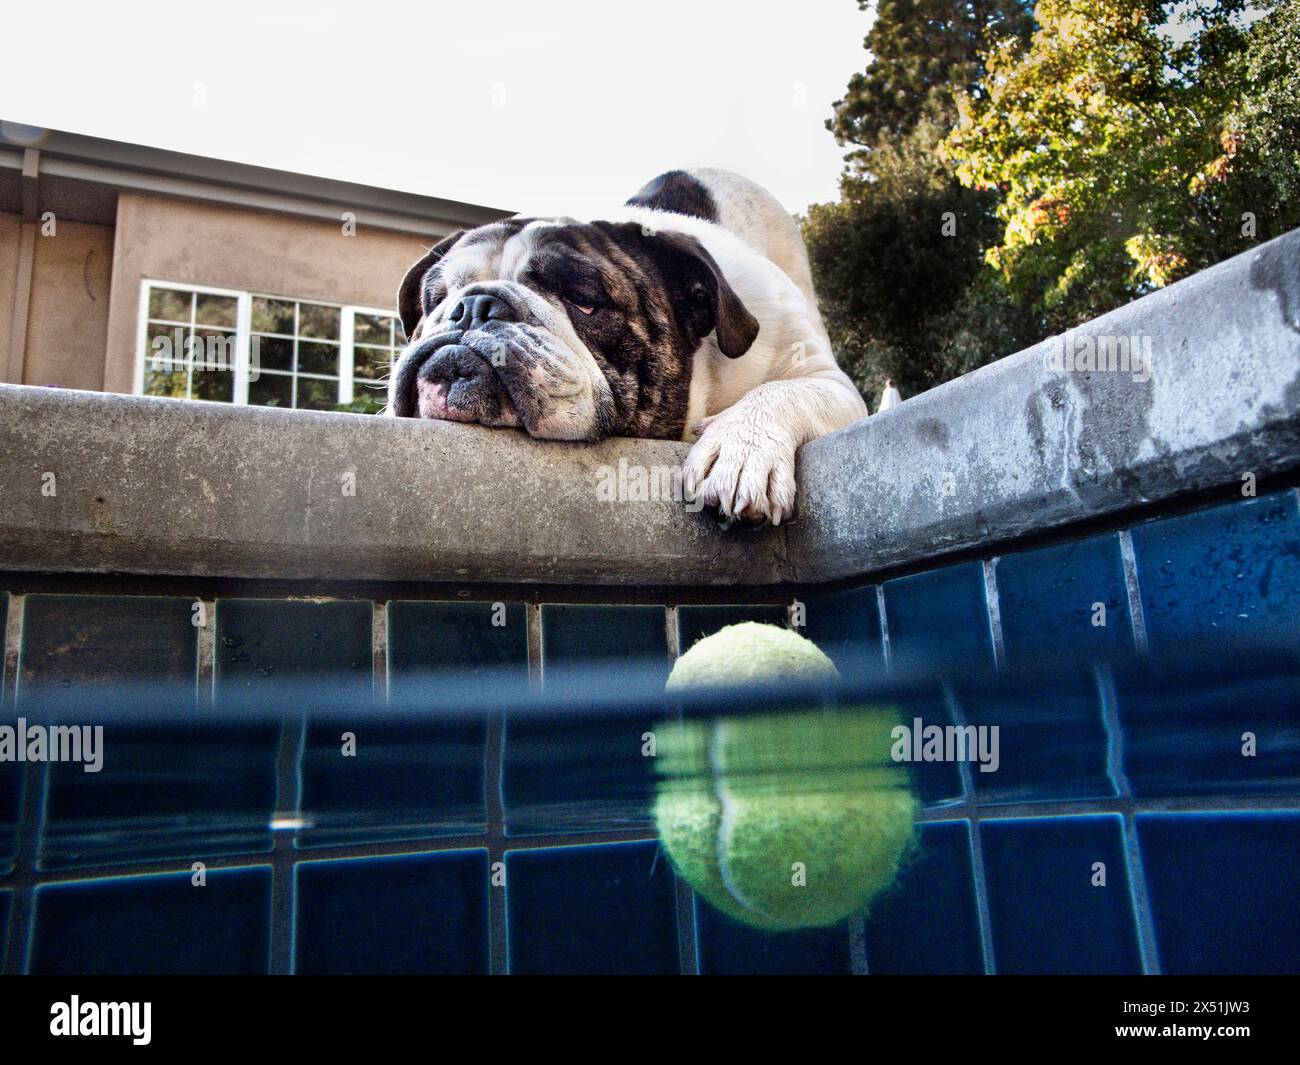 An English bulldog looks down at a tennis ball Stock Photo